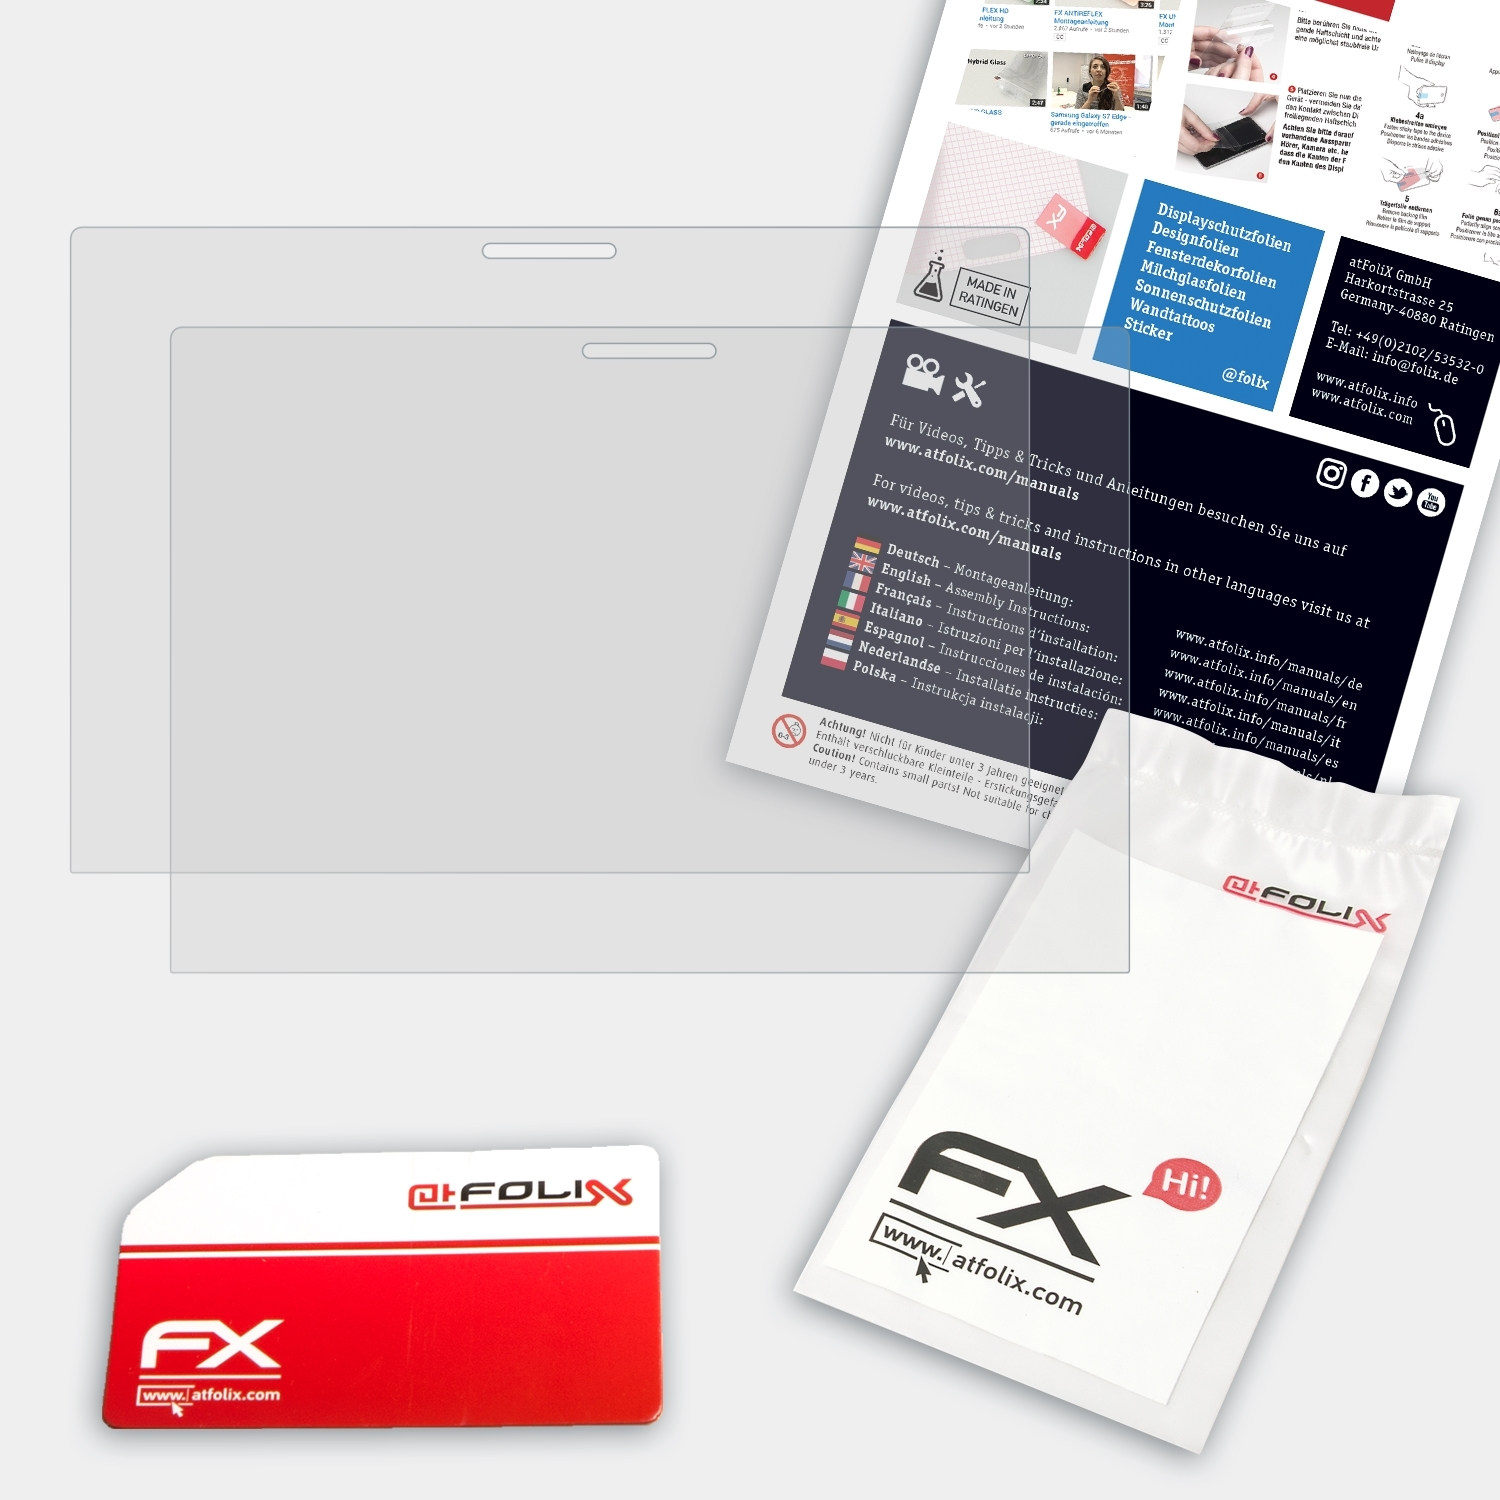 ATFOLIX 2x FX-Antireflex Displayschutz(für x360 HP ProBook G1) 440